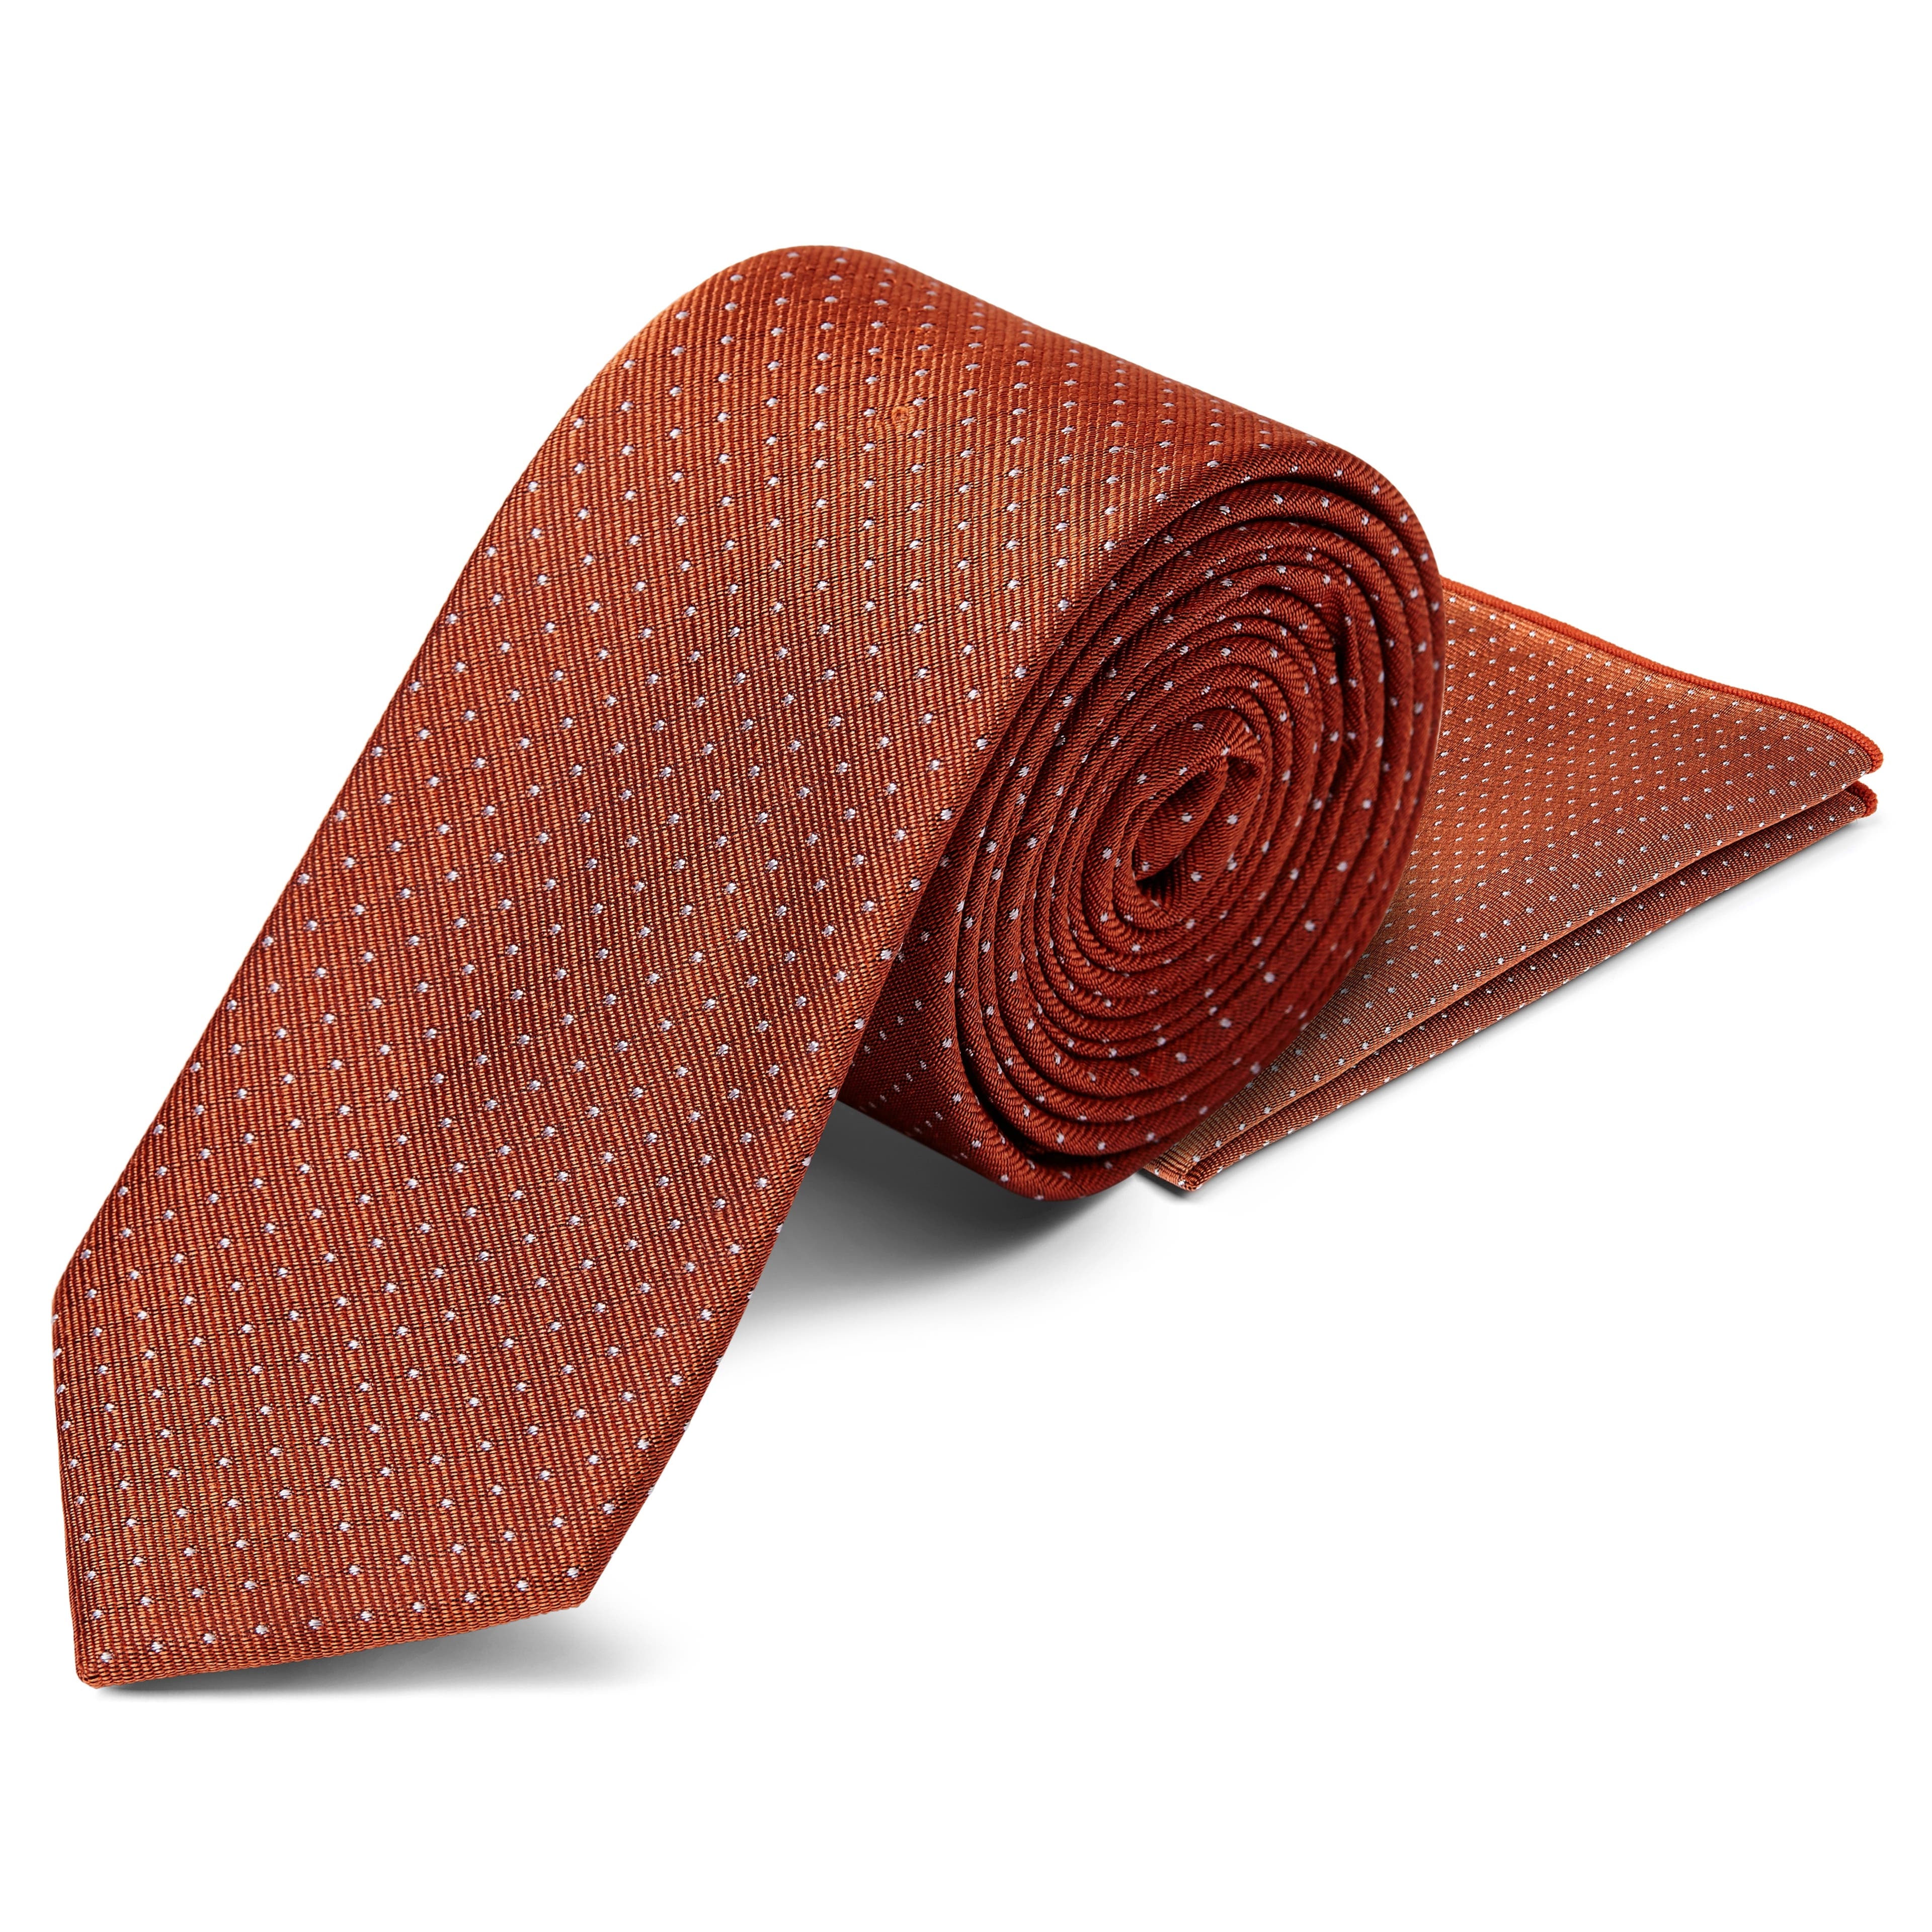 Set met zijden stropdas en pochet in cognackleur met stippen